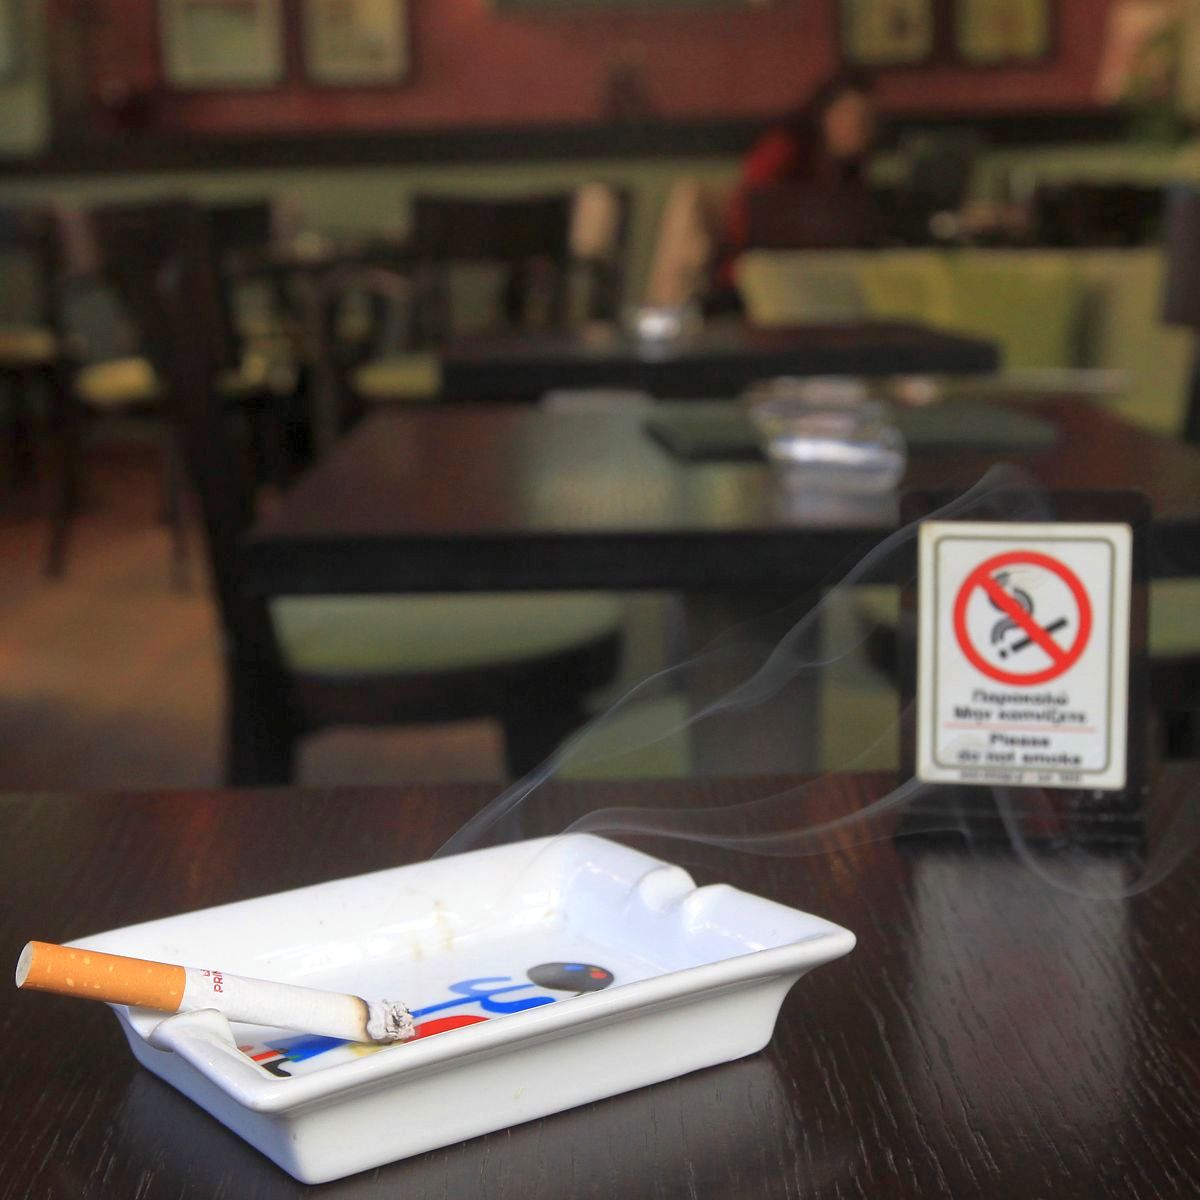 МЗ засилва проверките в заведенията, стряска с факти за цигарите